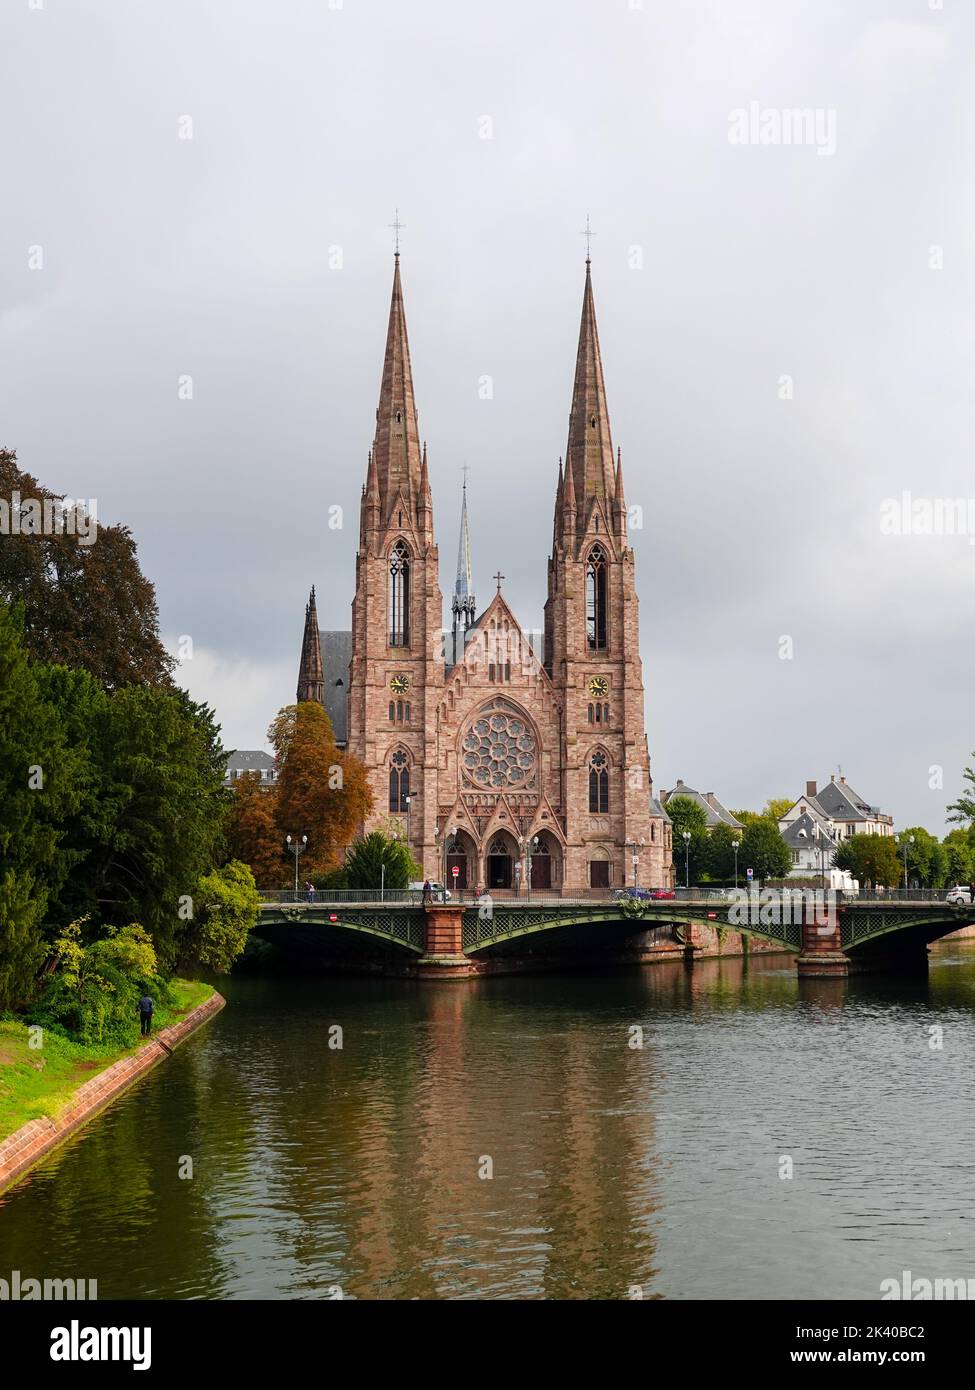 St. Paul's Church of Strasbourg, Église Saint-Paul de Strasbourg, neugotische Architektur mit zwei Stiften in Pont d'Auvergne, Elsass, Frankreich. Stockfoto